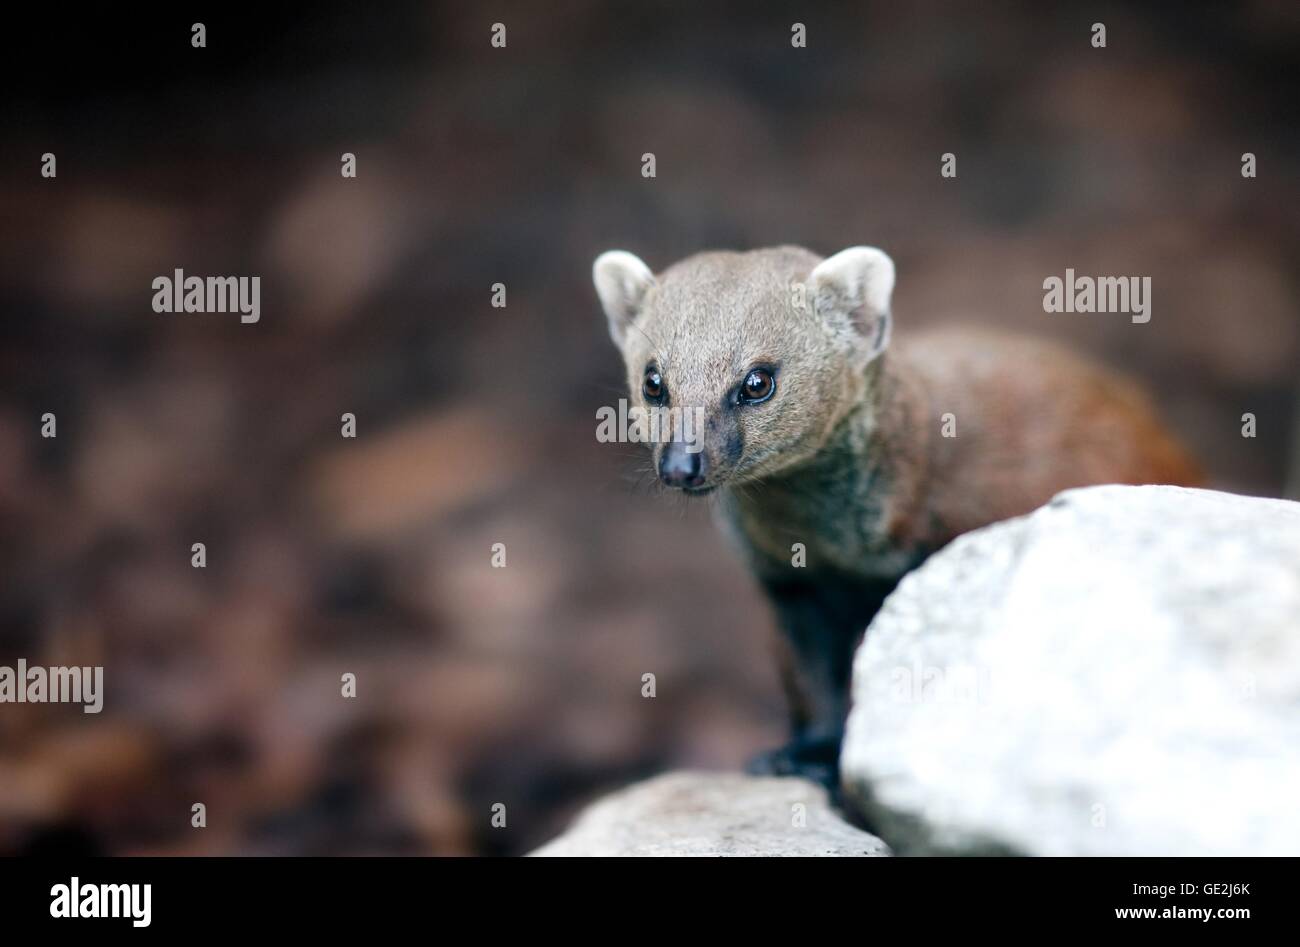 common grey mongoose Stock Photo